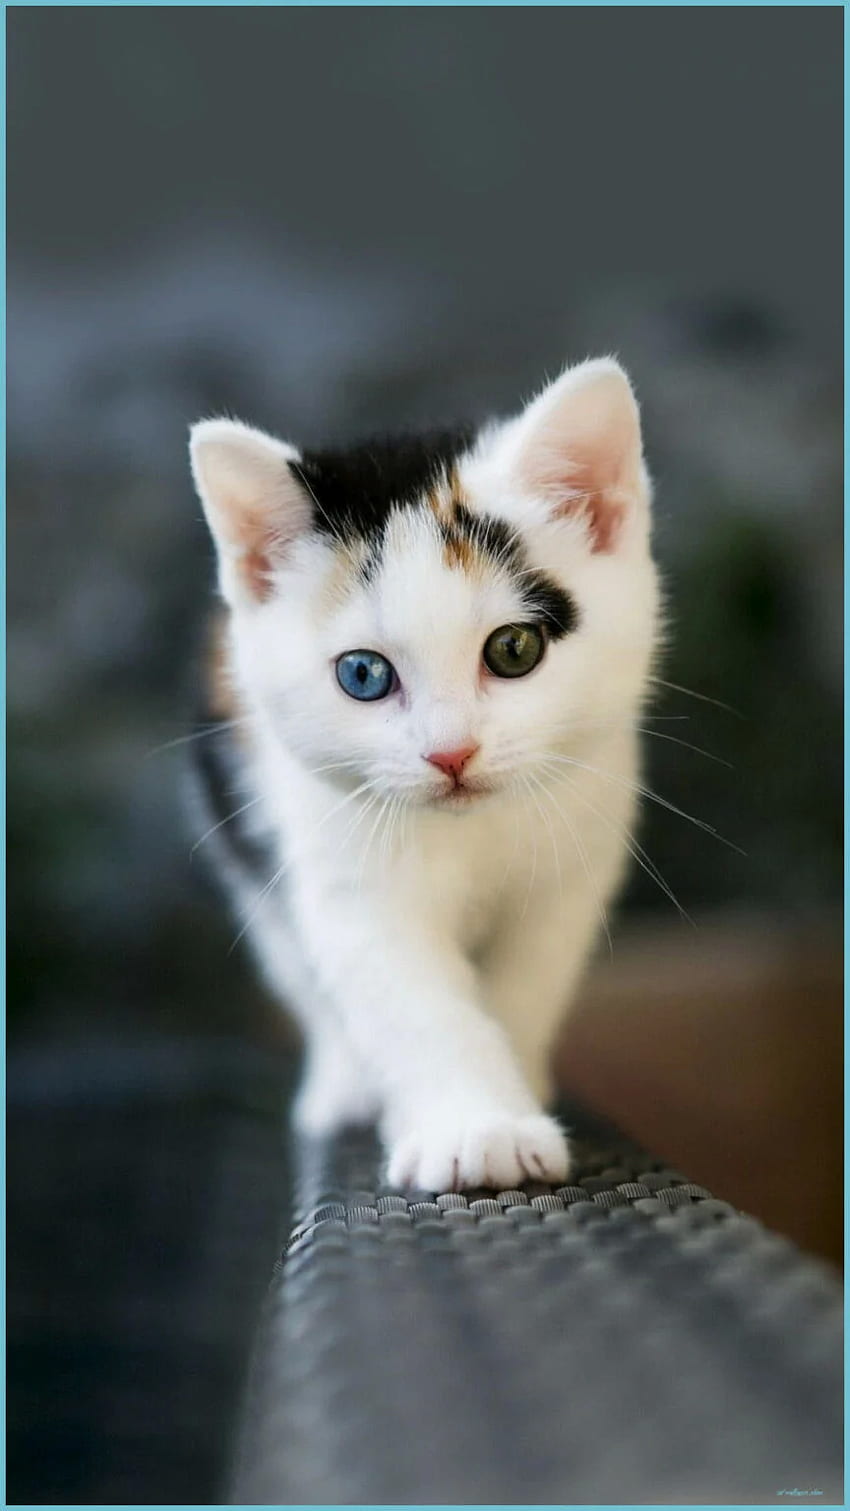 Cute Kitten Wallpaper 4K, Cute Cat, Girly backgrounds, 5K